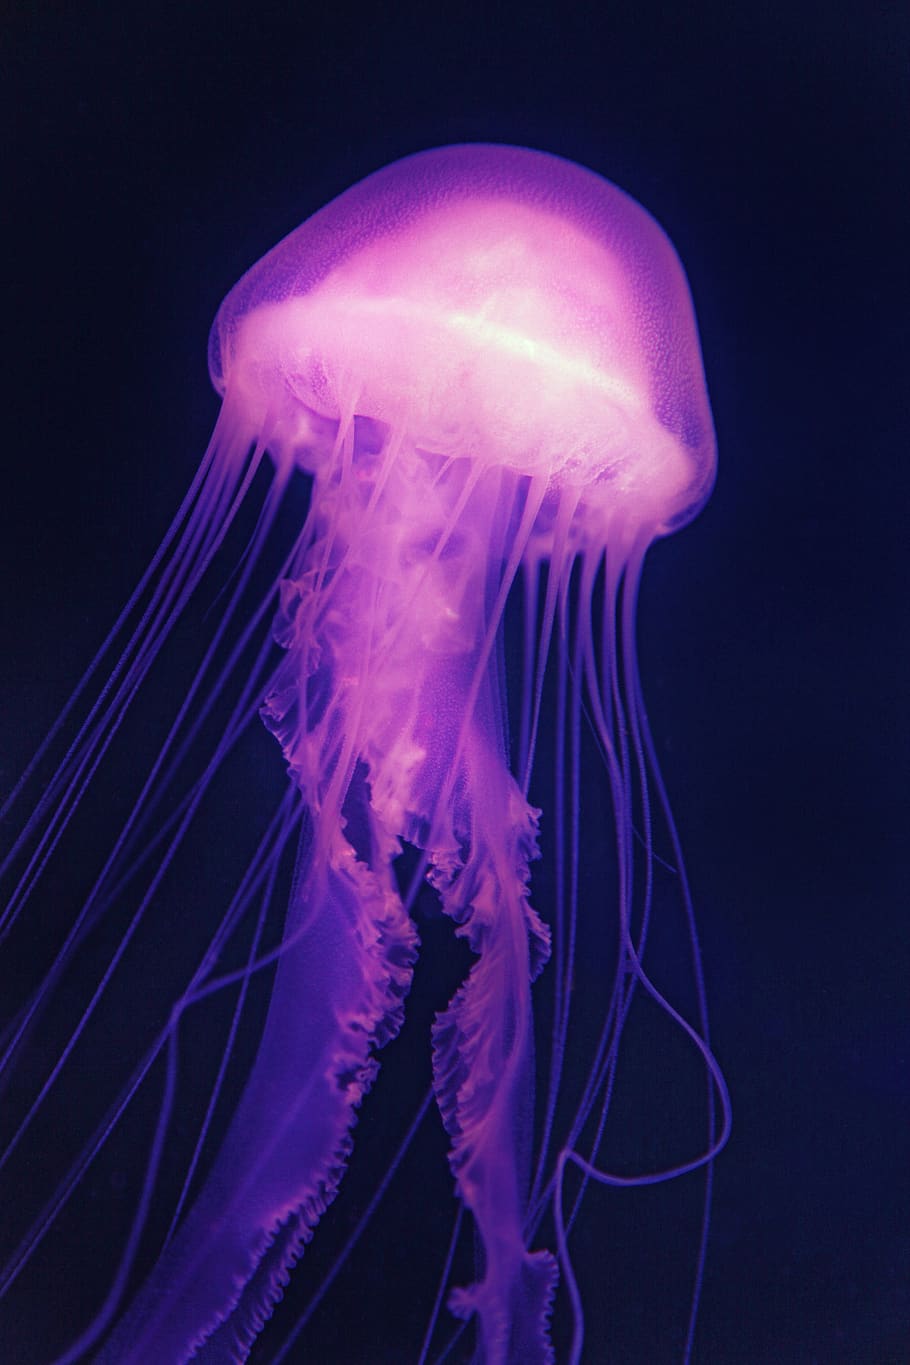 ungu, berwarna merah muda, ubur ubur, laut, jeli, medusa, akuarium, bawah air, makhluk, Bercahaya